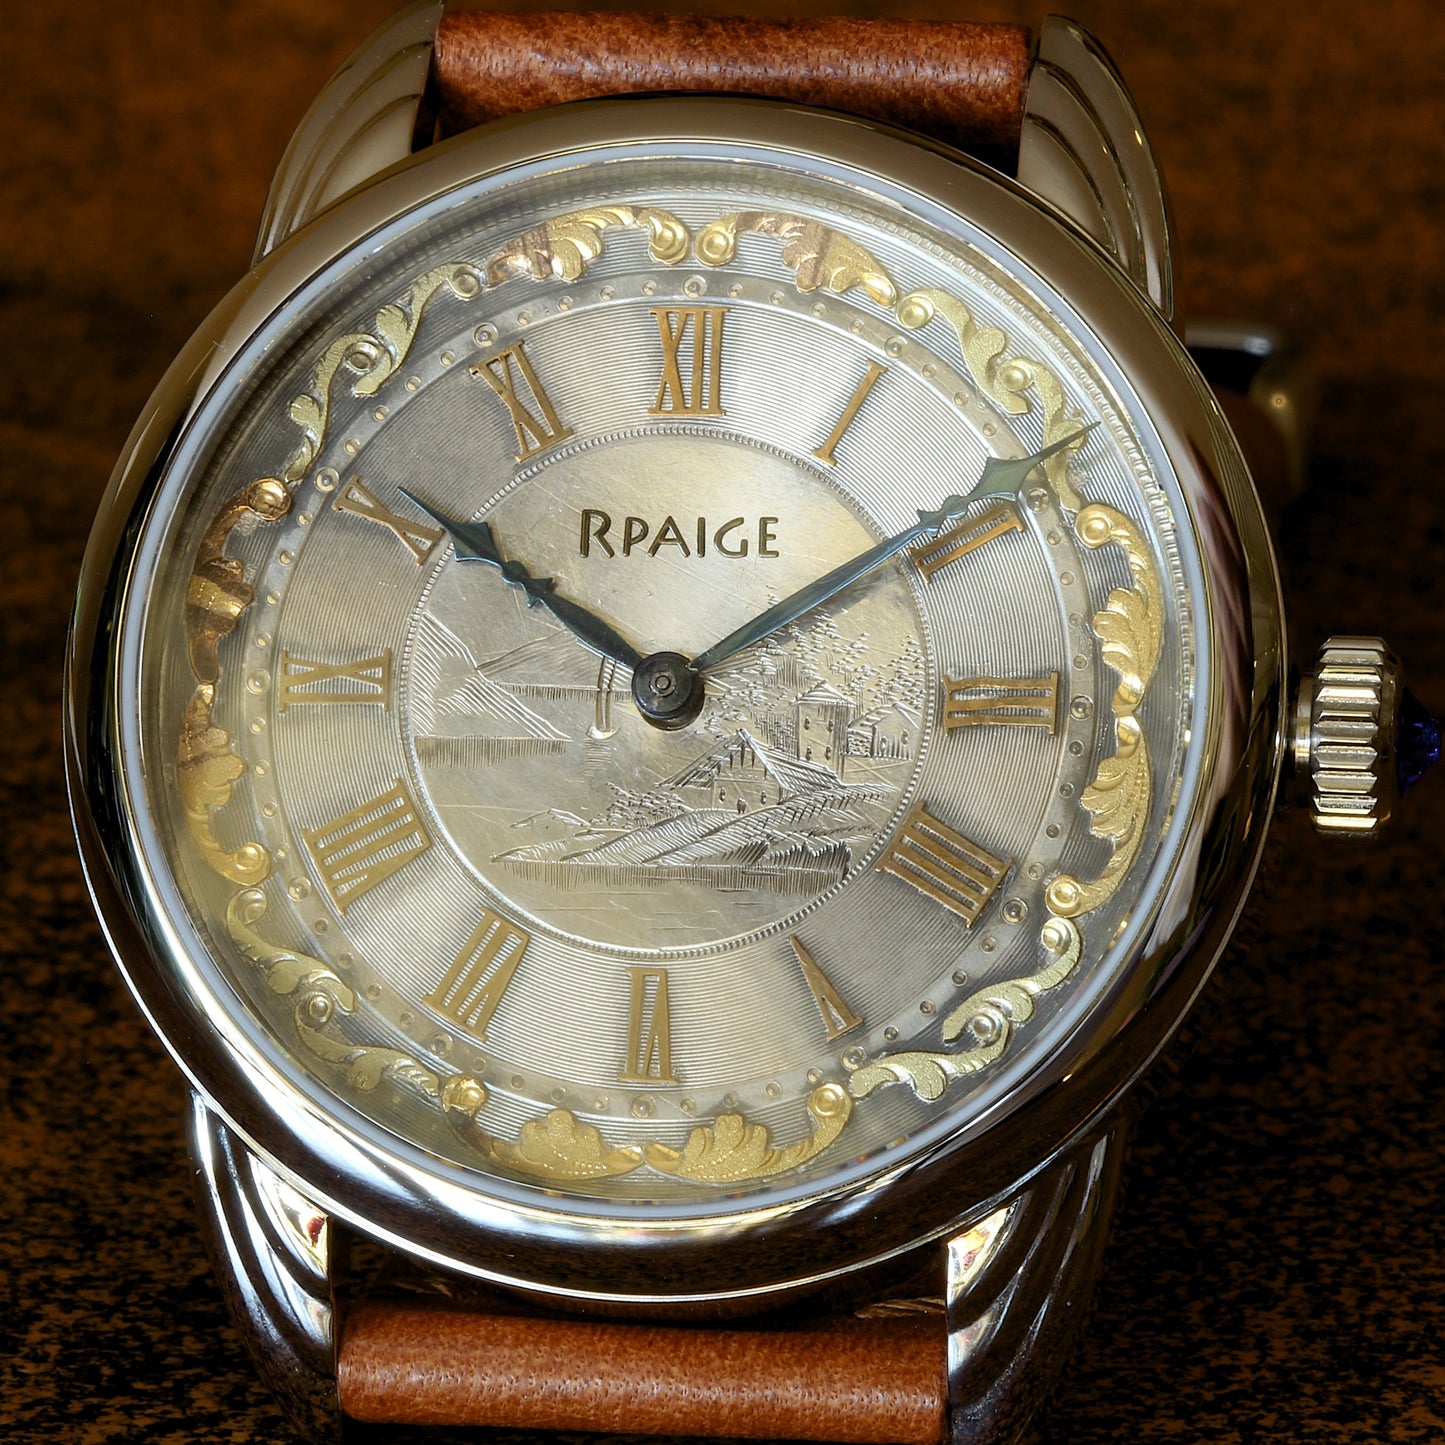 RPaige Wrocket watch